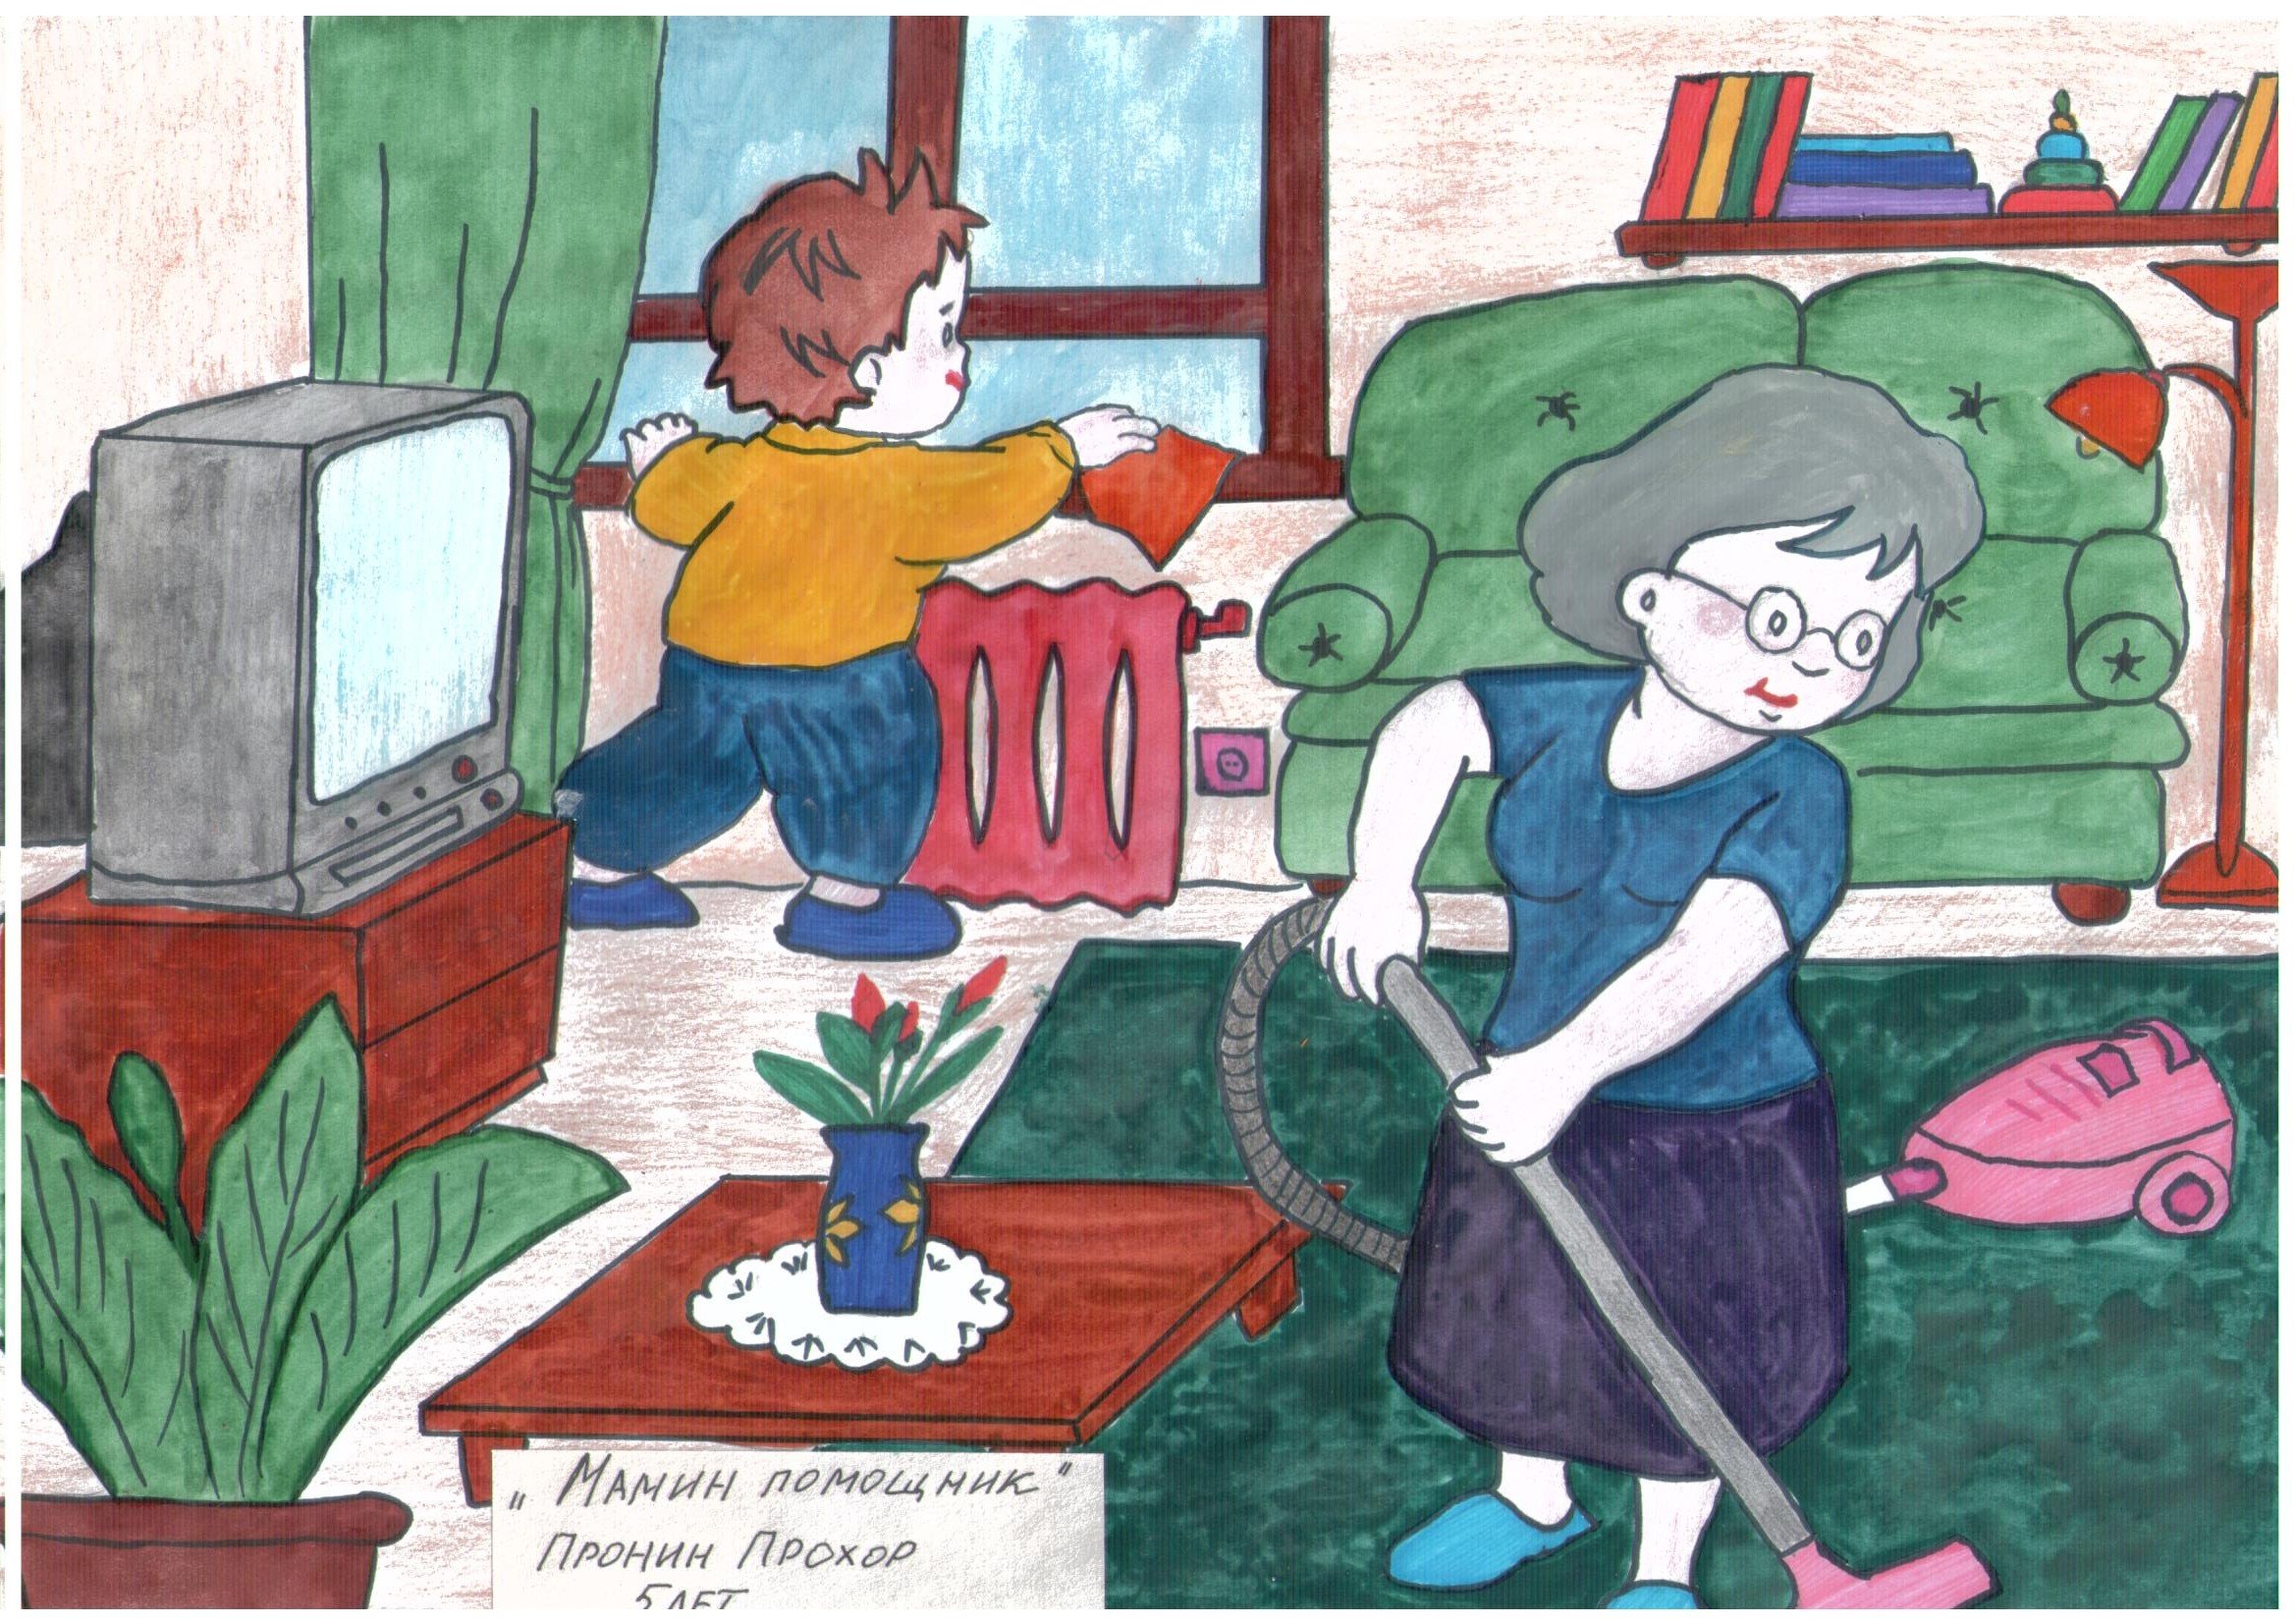 Иллюстрации мамины помощники для детей